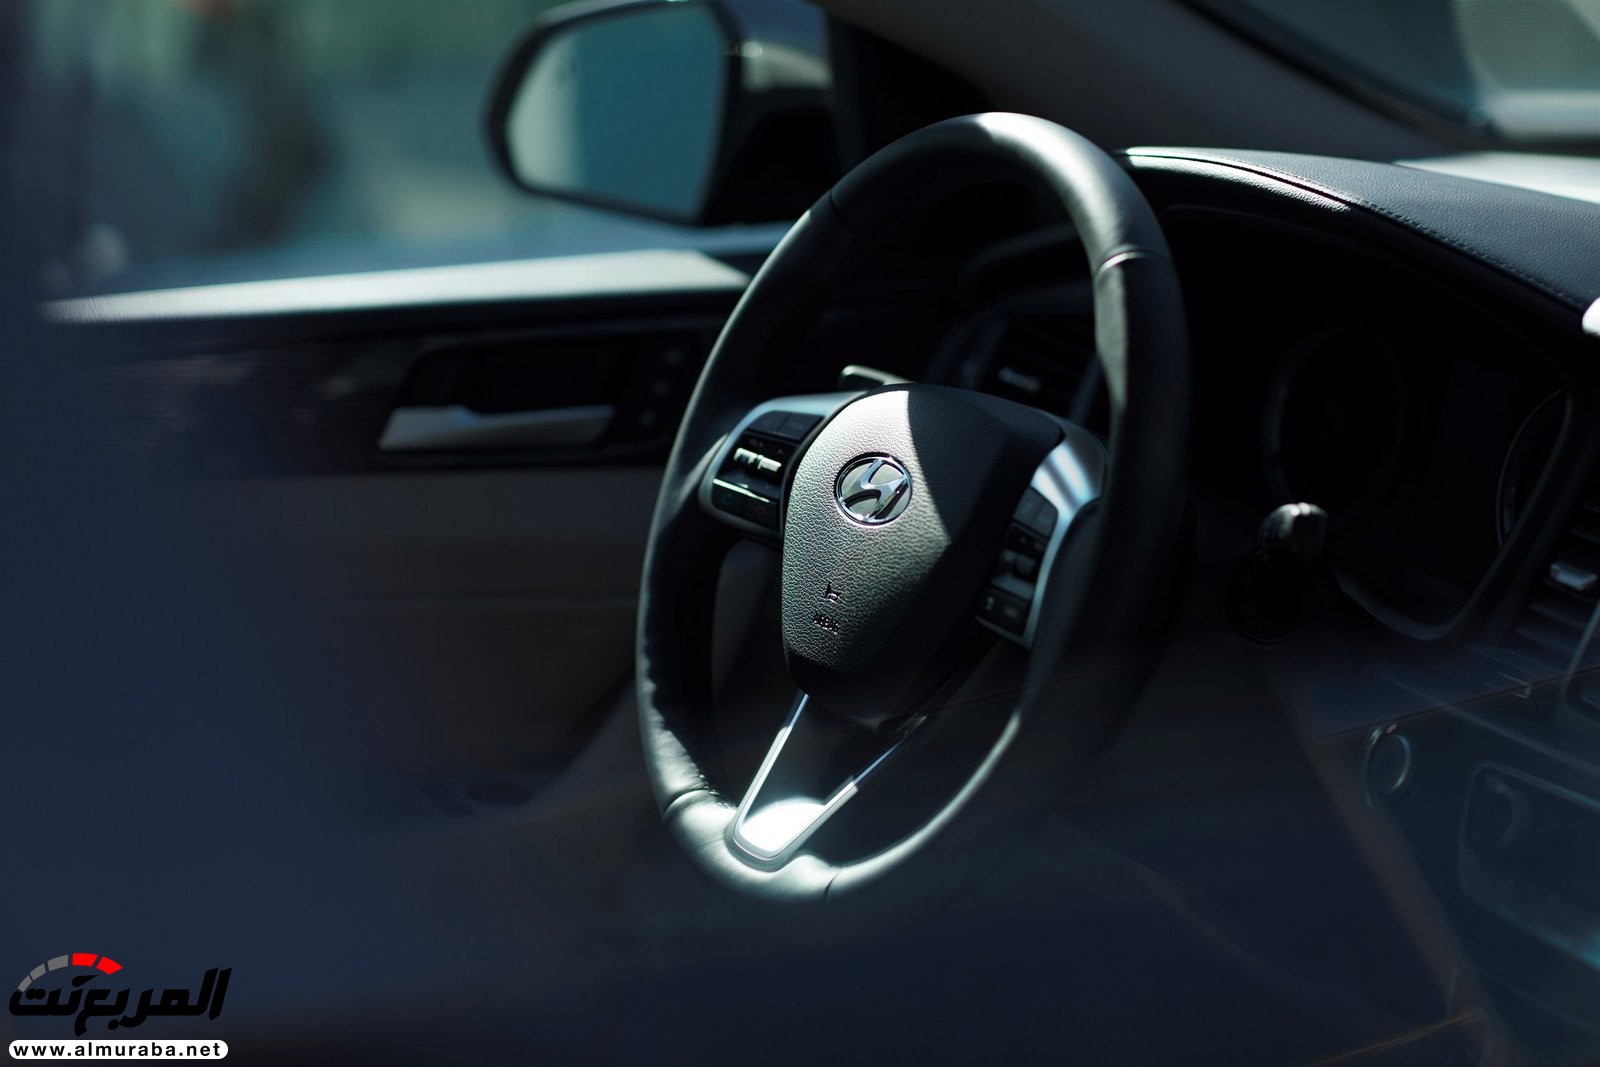 هيونداي سوناتا 2018 المحدثة تحصل على تحديثات خارجية وداخلية "صور وفيديو واسعار" Hyundai Sonata 165